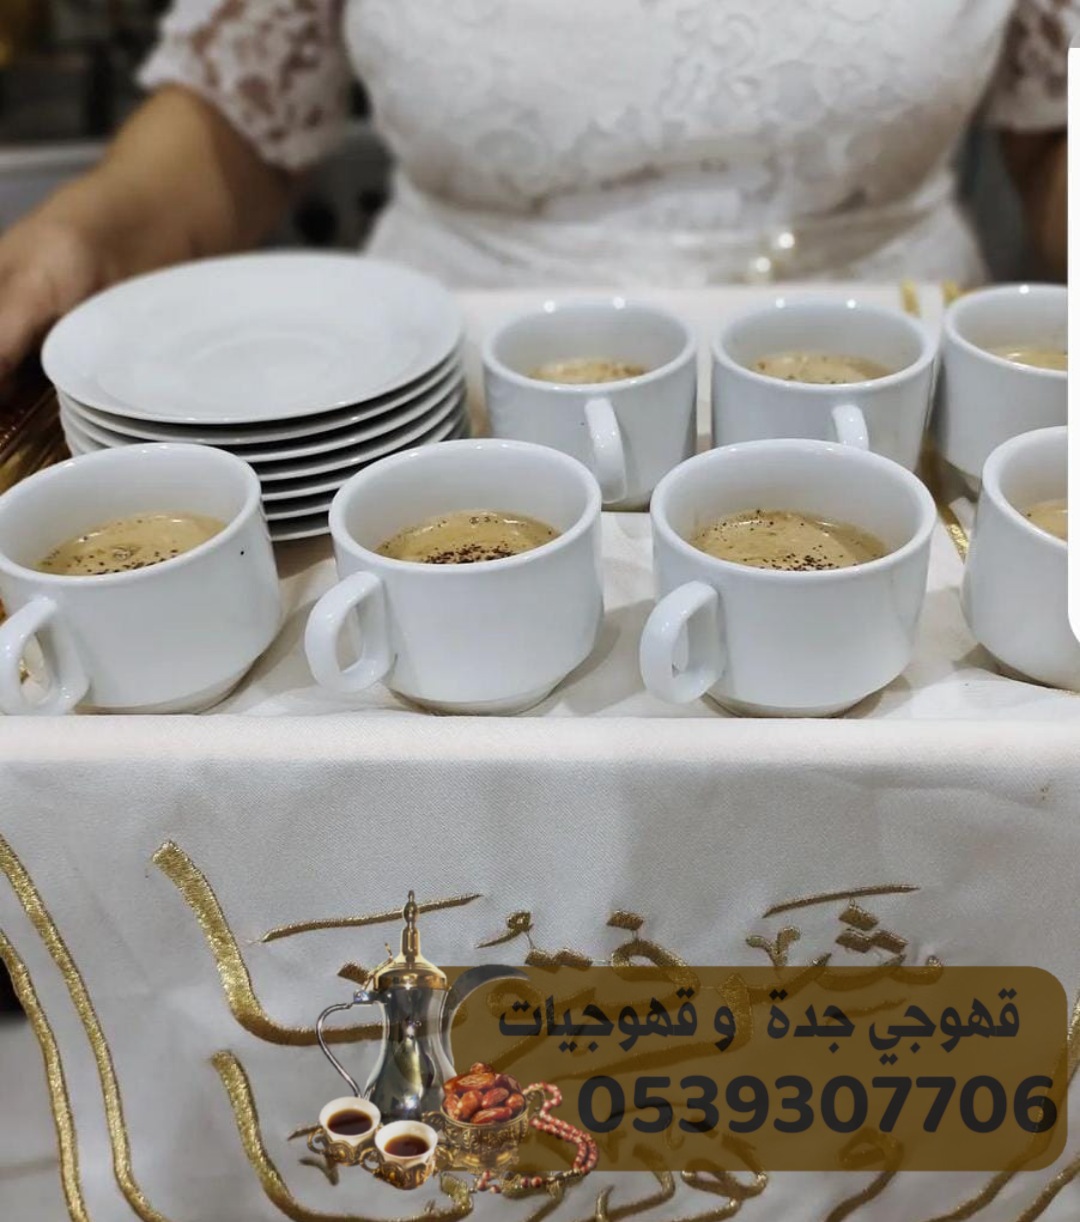 صبابين قهوة في جدة ومنسقين حفلات 0539307706 170550065676661